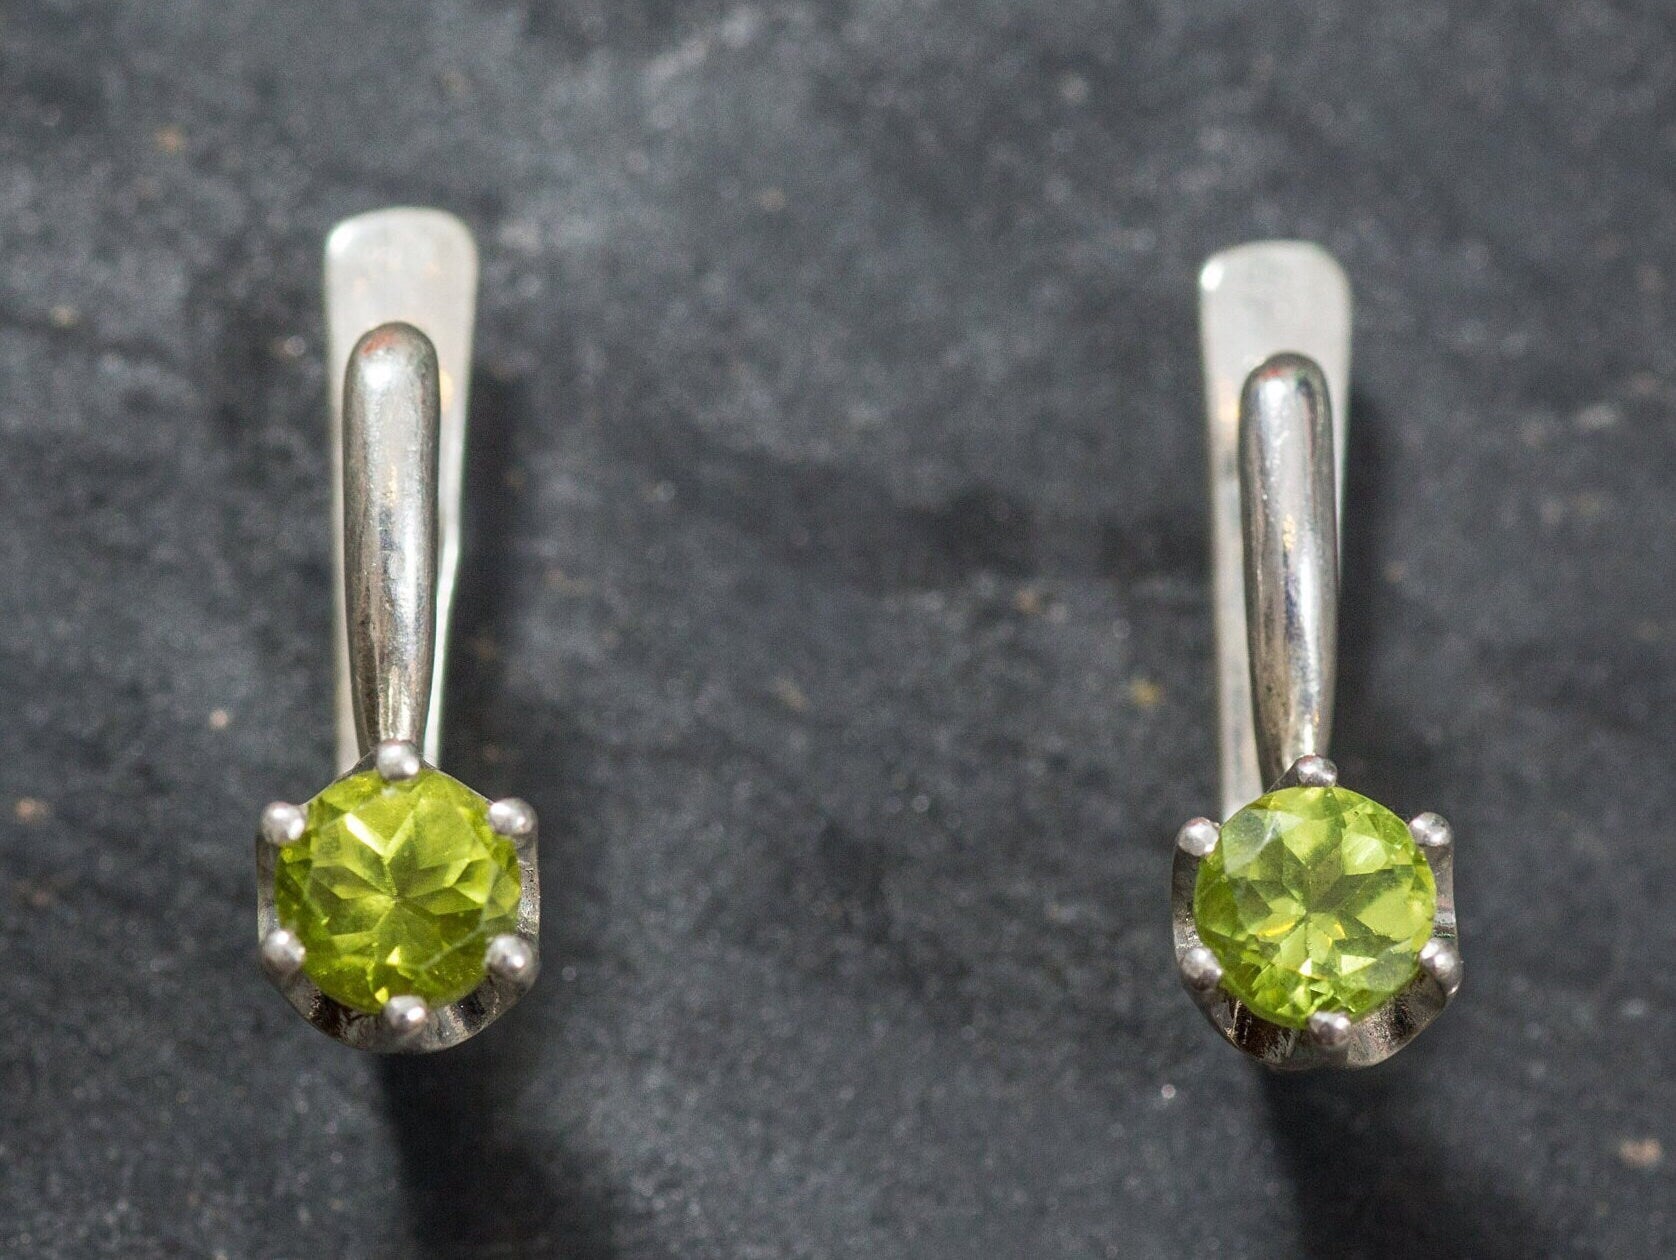 Natural Peridot Earrings - Green Drop Earrings, Dainty Peridot Studs